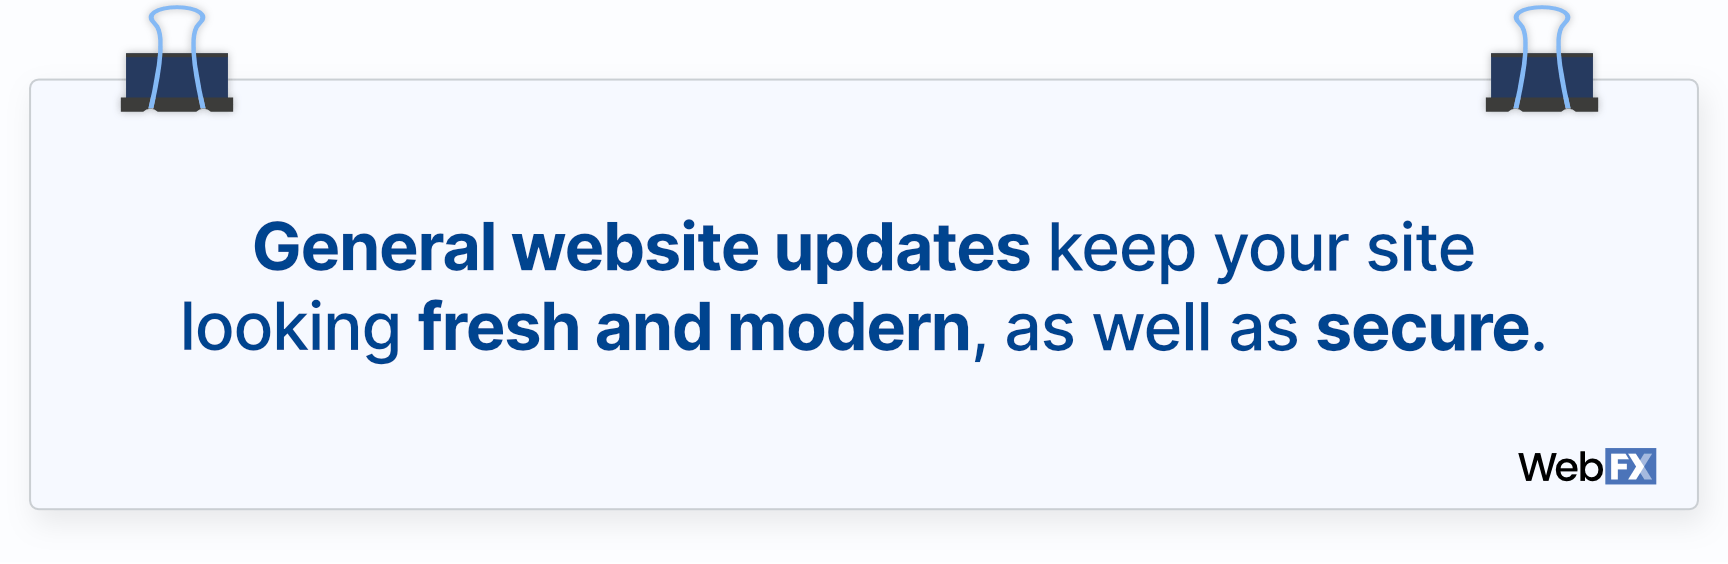 一般的网站更新会让你的网站看起来新鲜、现代，同时也很安全